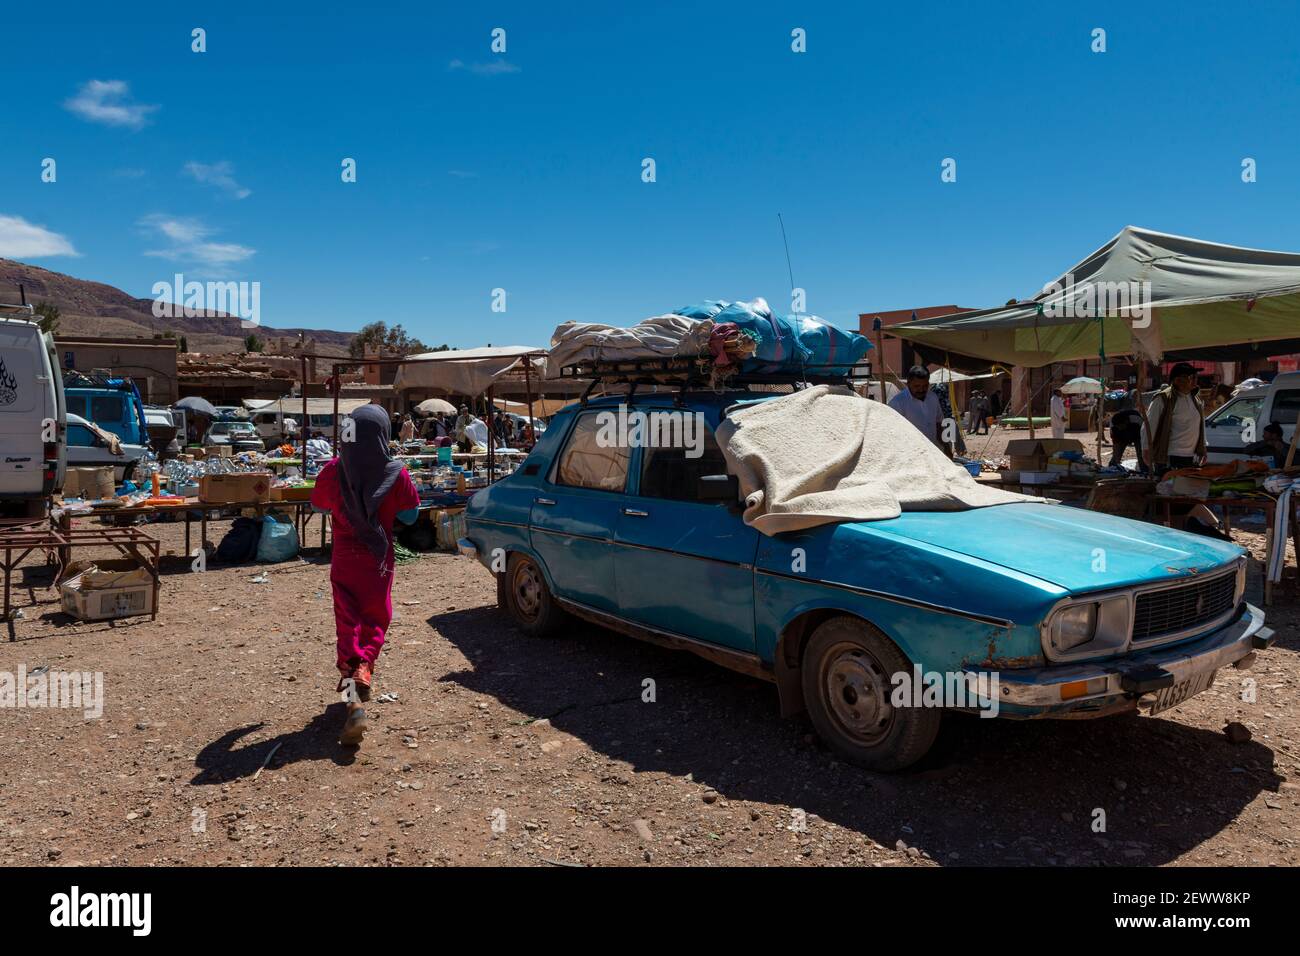 Telouet, Marokko - 14. April 2016: Straßenszene im Dorf Telouet, in der Atlas-Region von Marokko, mit Menschen in einem Straßenmarkt. Stockfoto